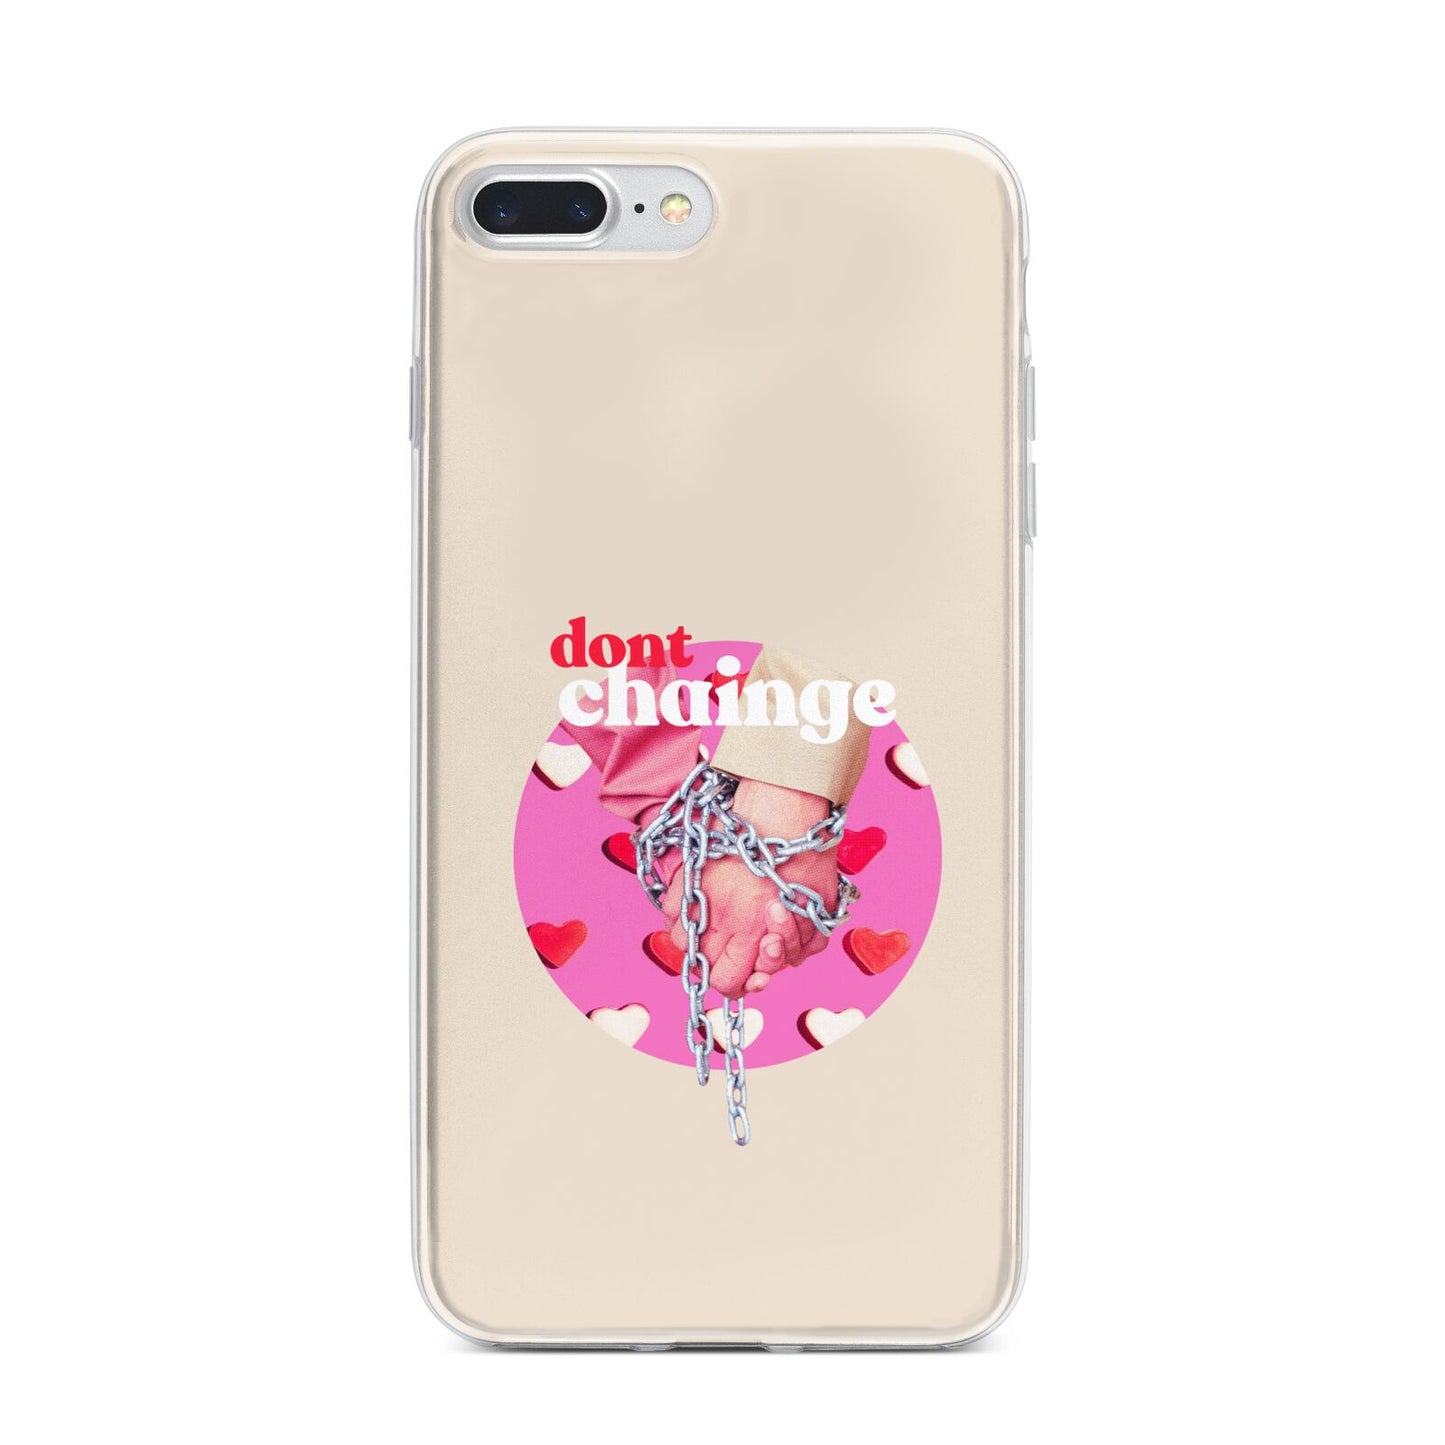 Retro Valentines Quote iPhone 7 Plus Bumper Case on Silver iPhone